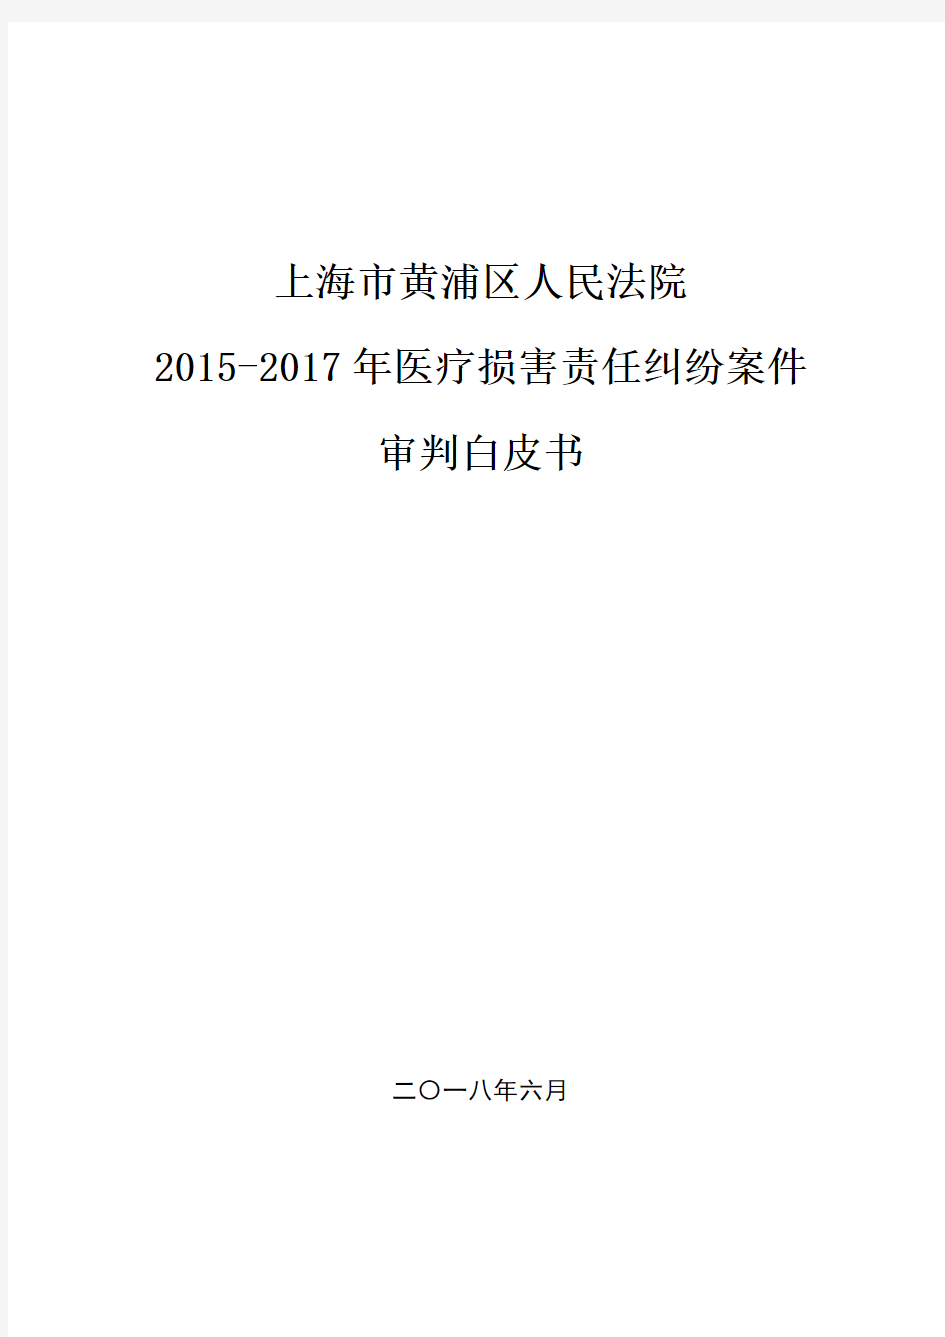 2015年-2017年医疗损害责任纠纷案件审判白皮书-上海高级人民